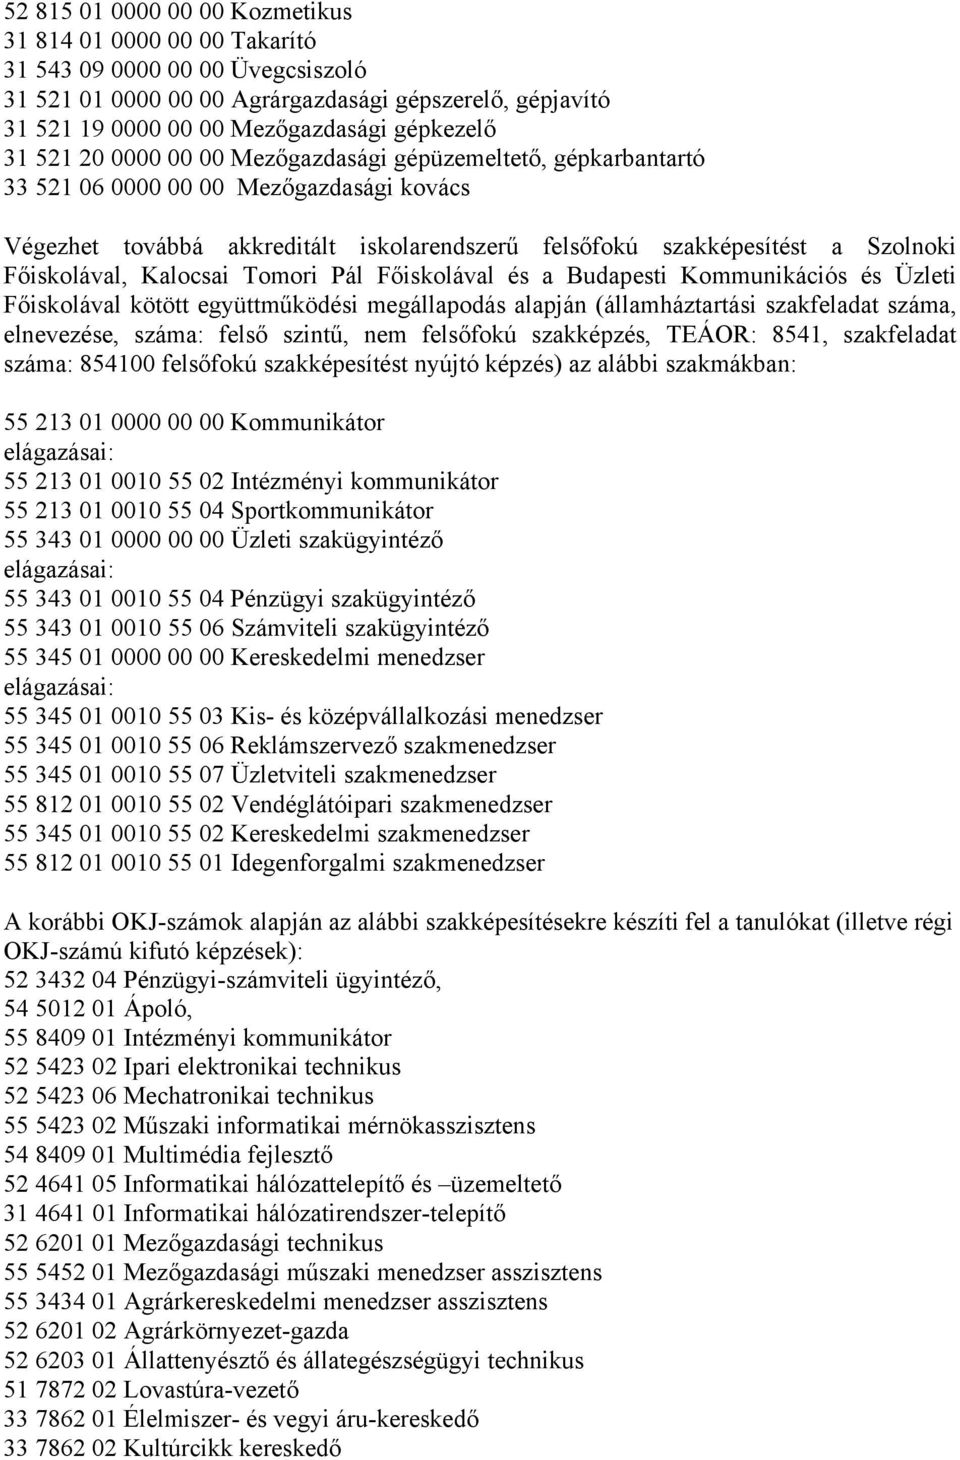 Főiskolával, Kalocsai Tomori Pál Főiskolával és a Budapesti Kommunikációs és Üzleti Főiskolával kötött együttműködési megállapodás alapján (államháztartási szakfeladat száma, elnevezése, száma: felső